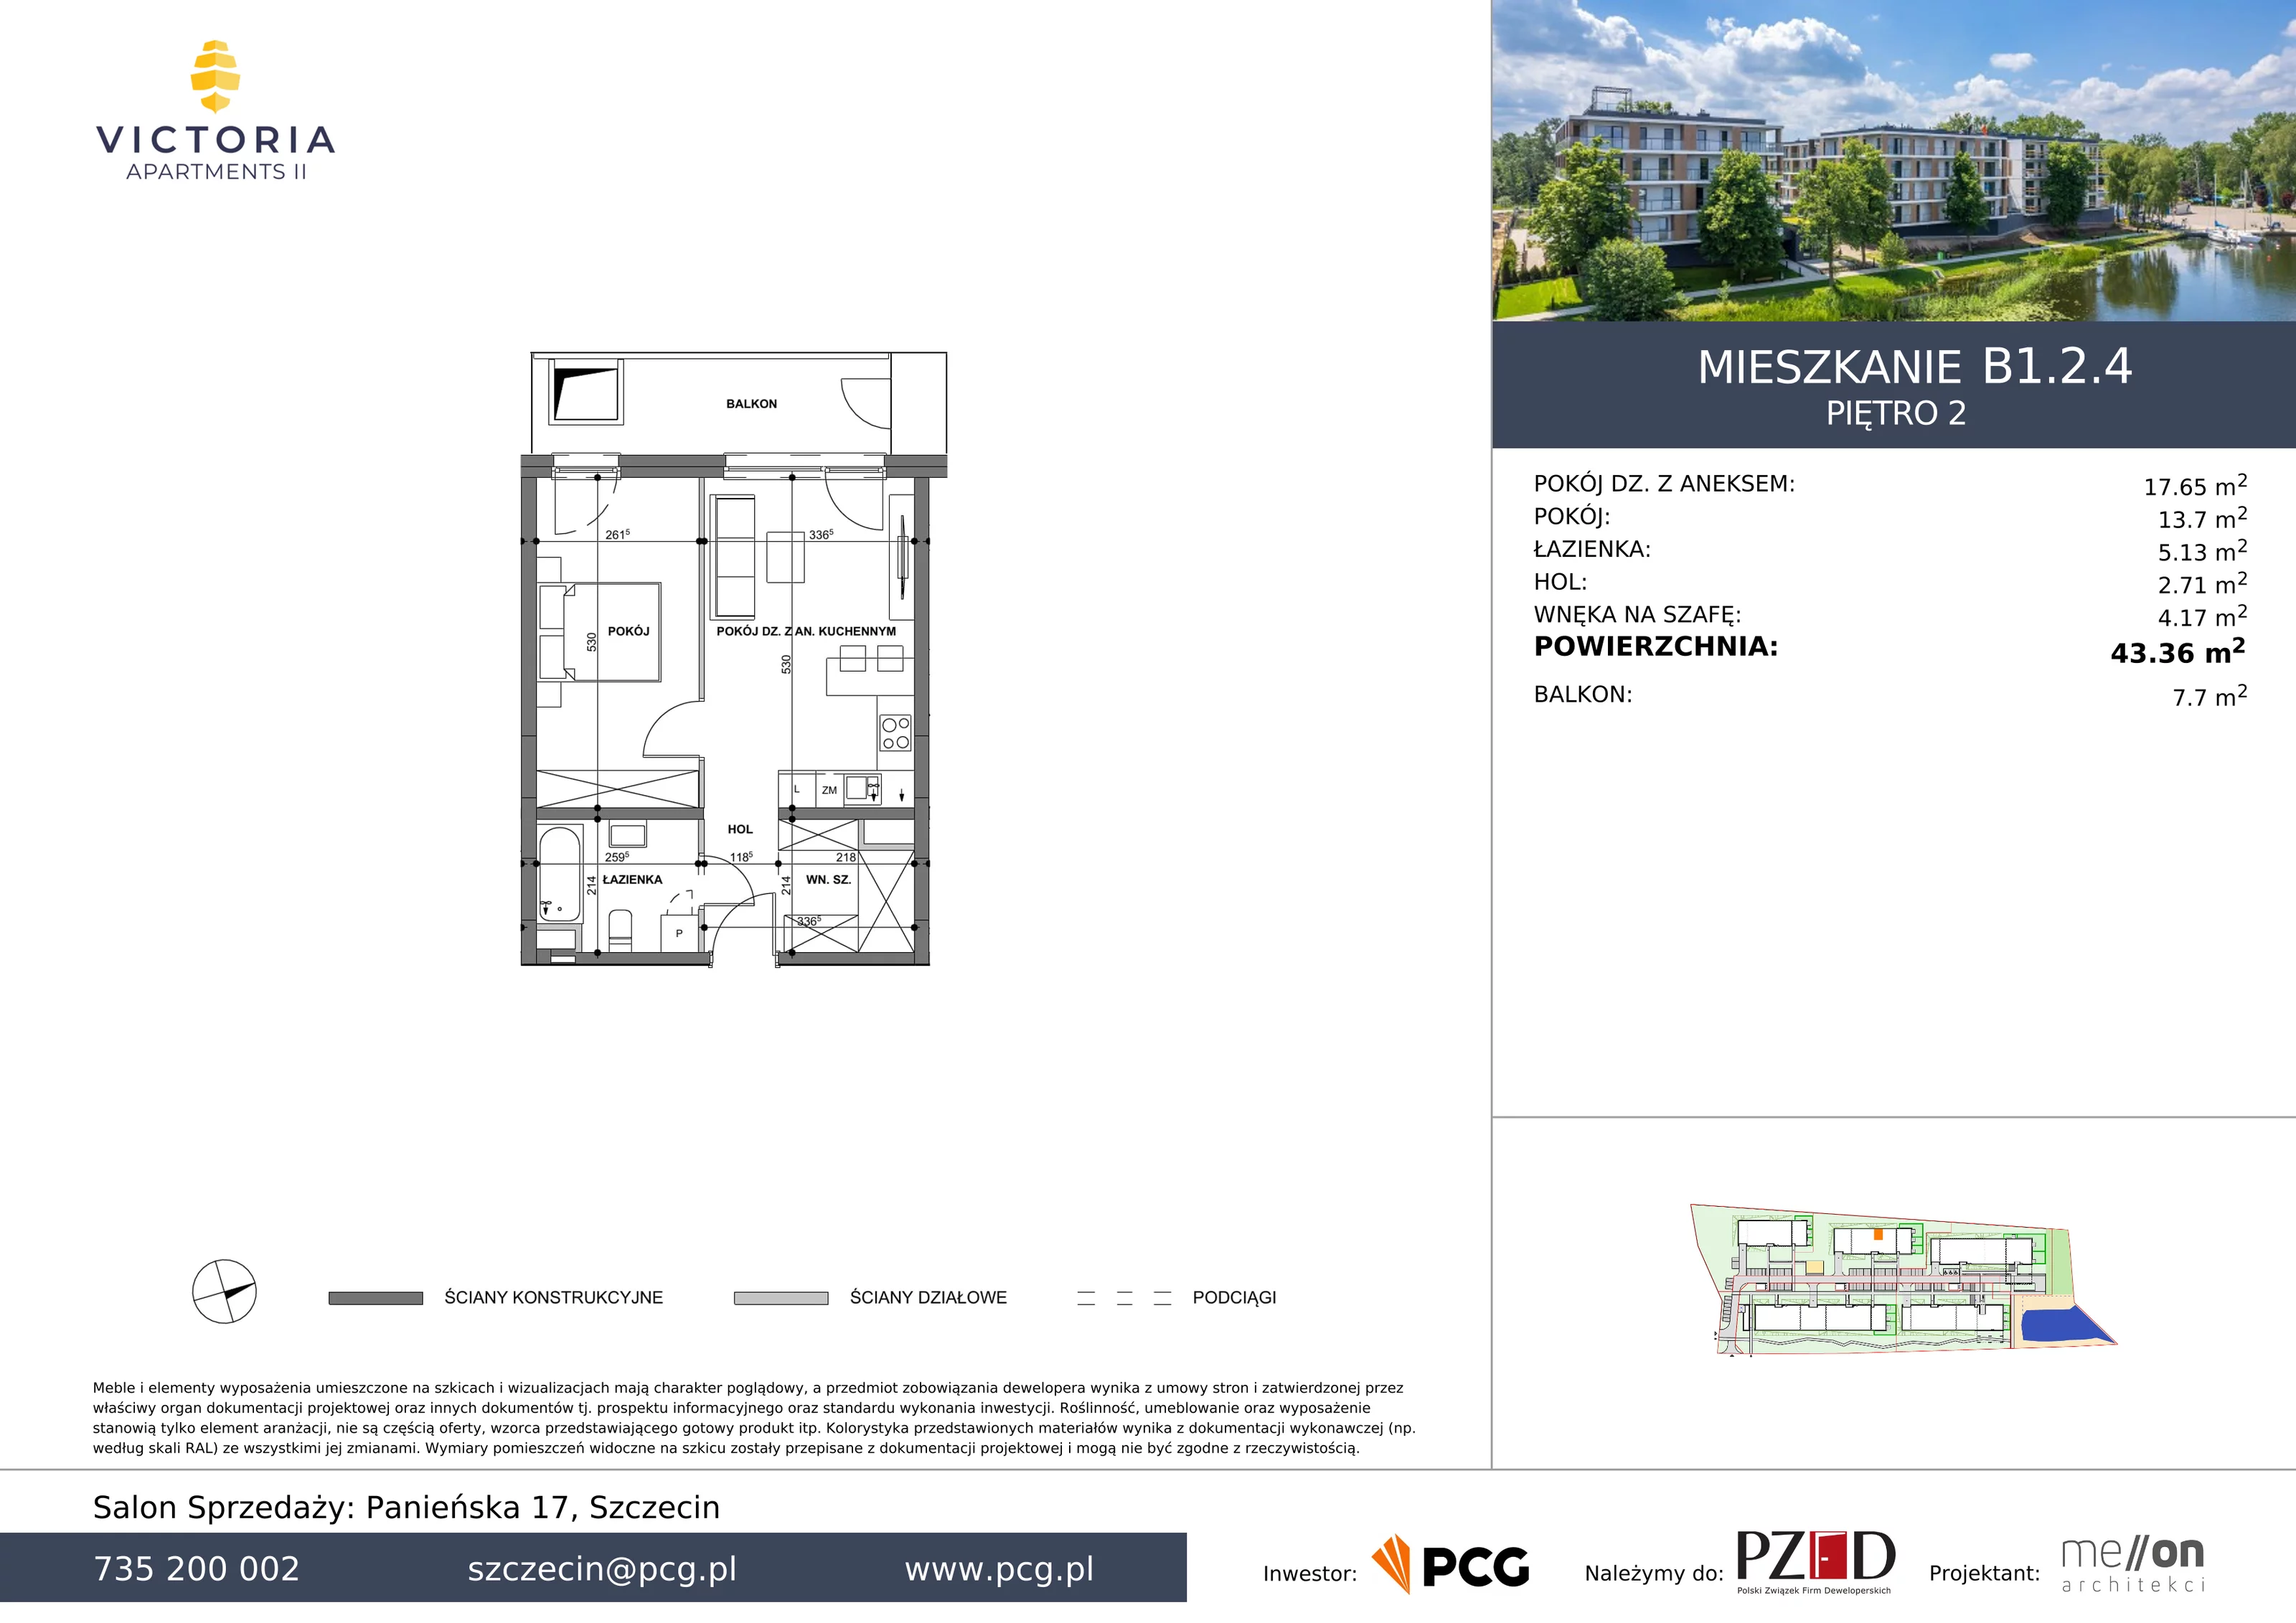 Apartament 43,36 m², piętro 2, oferta nr B1.2.4, Victoria Apartments II, Szczecin, Prawobrzeże, Dąbie, ul. Przestrzenna